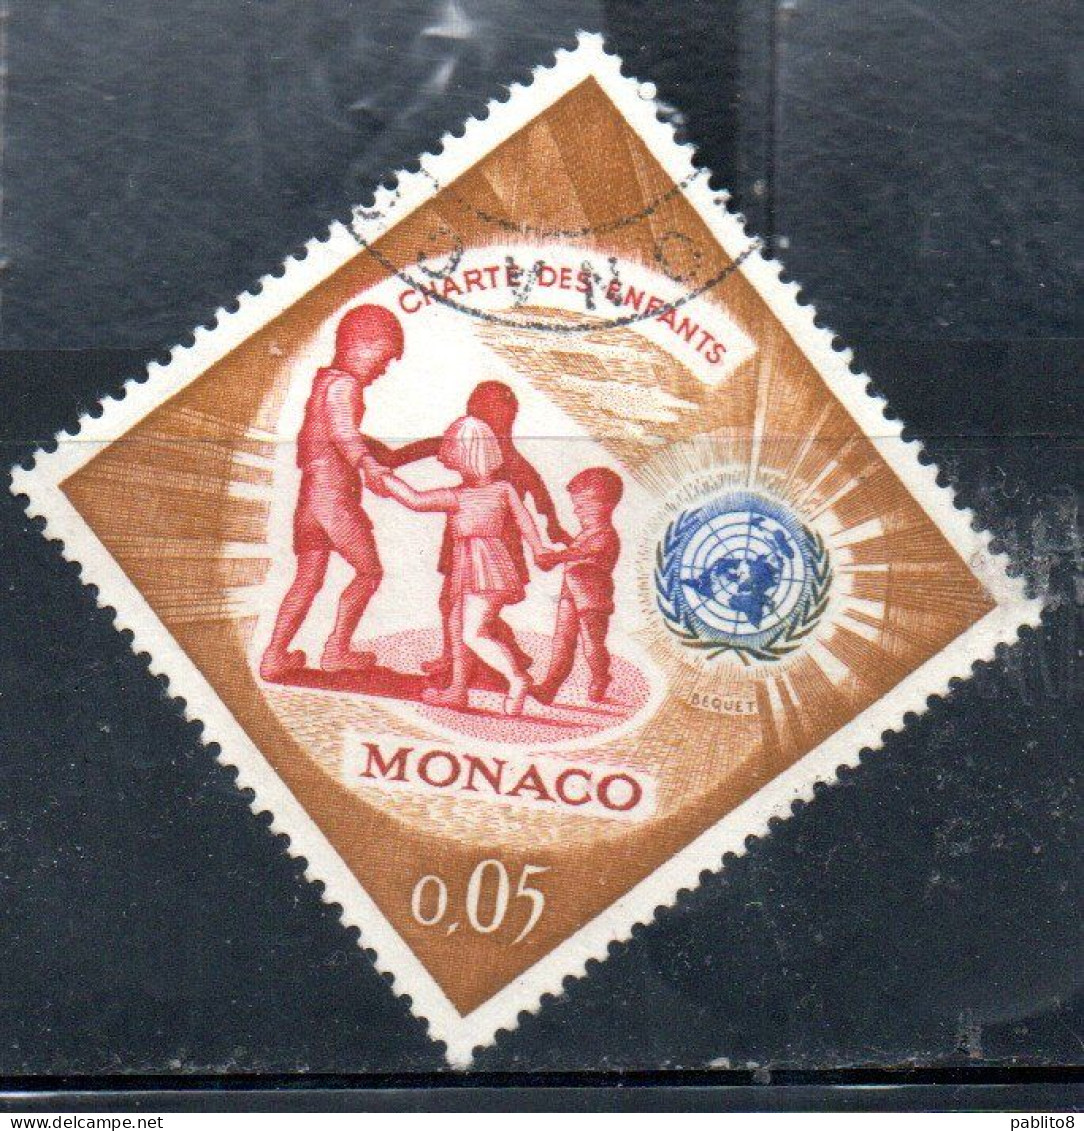 MONACO 1963 UN ONU CHILDREN' CHARTER DANCING AND UN ONU EMBLEM 5c USED USATO OBLITERE' - Oblitérés